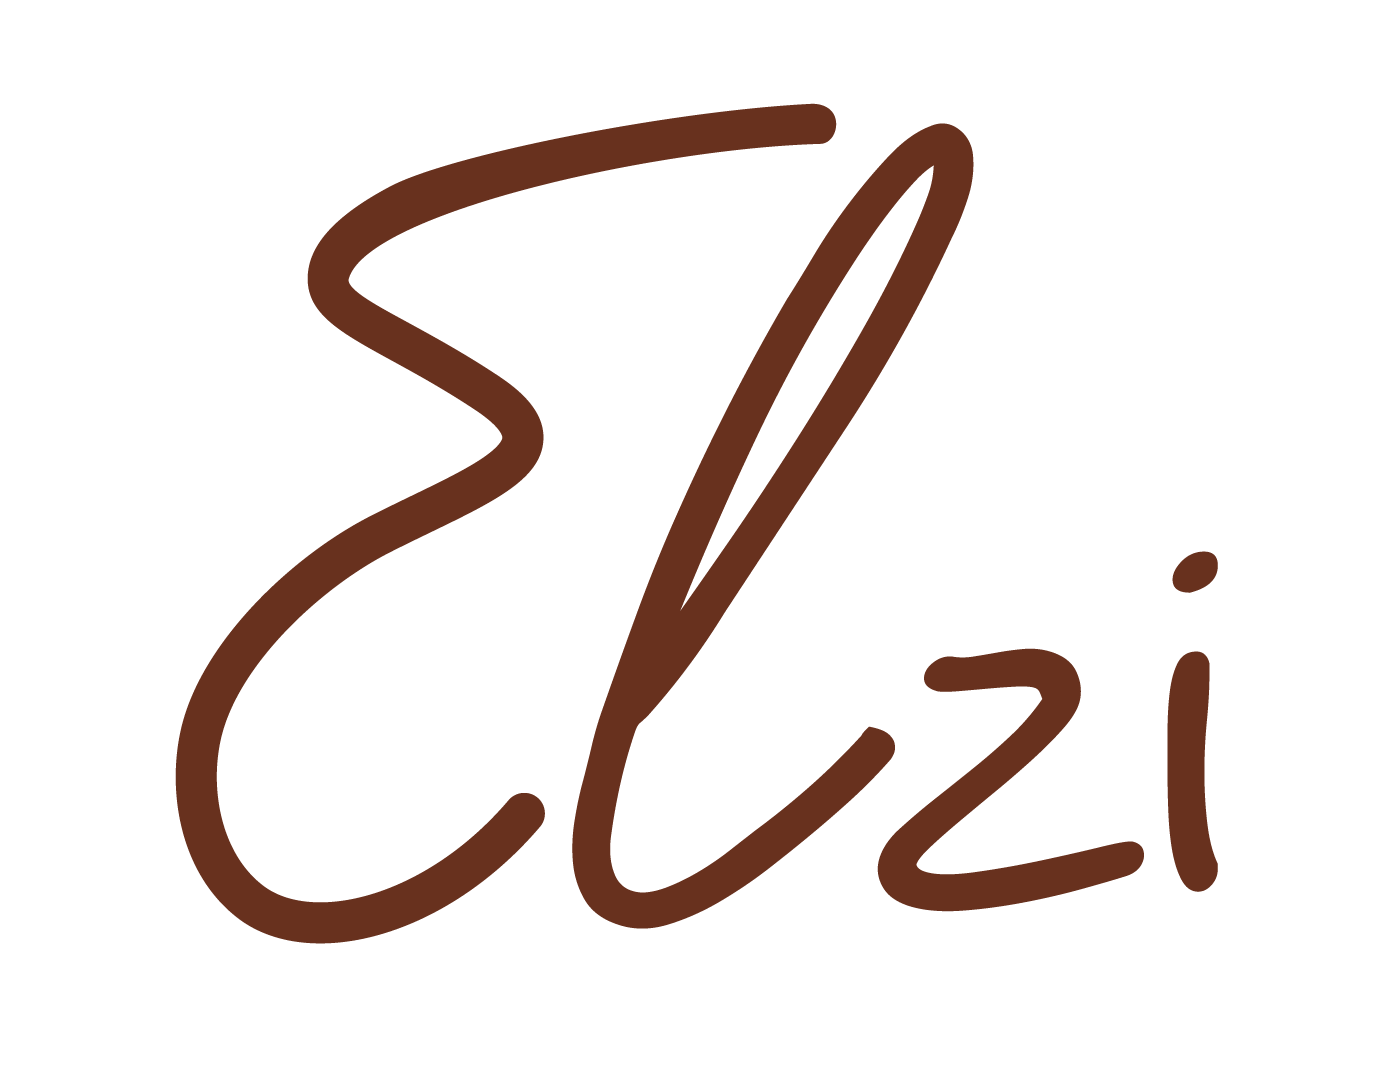 Elzi